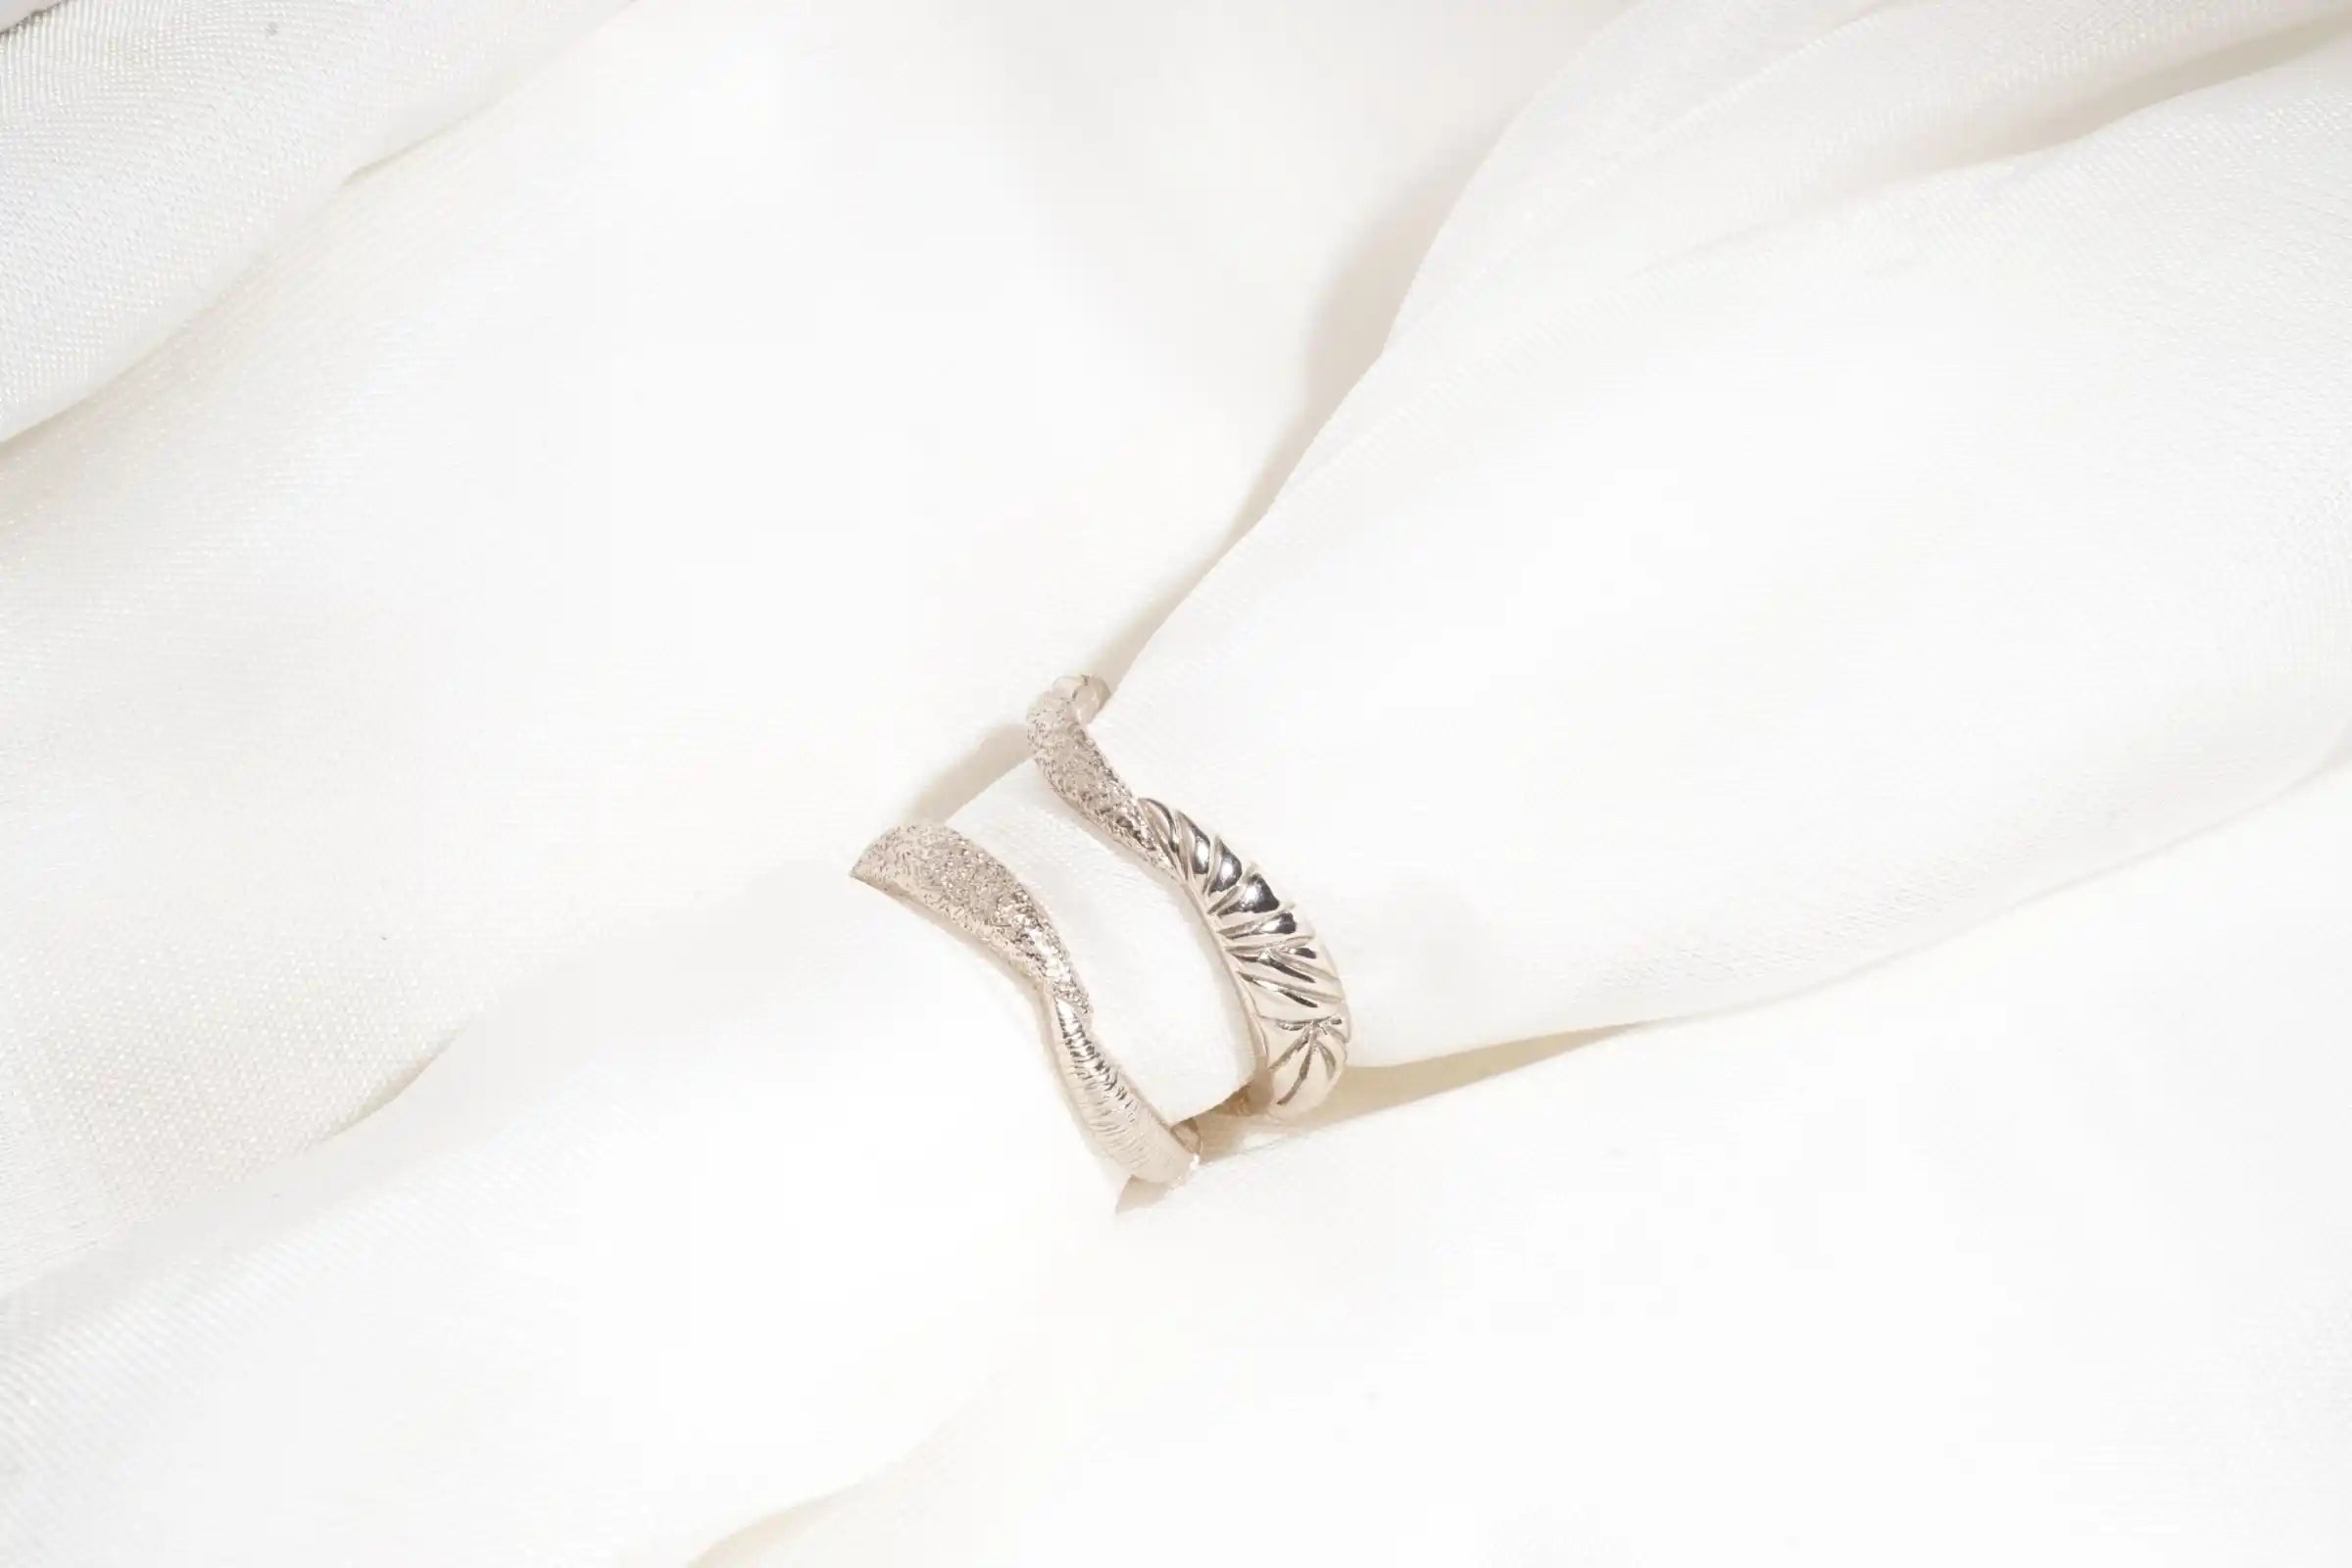 Chia Jewelry訂製k金婚戒對戒，以日月為主題的簡約婚戒設計，